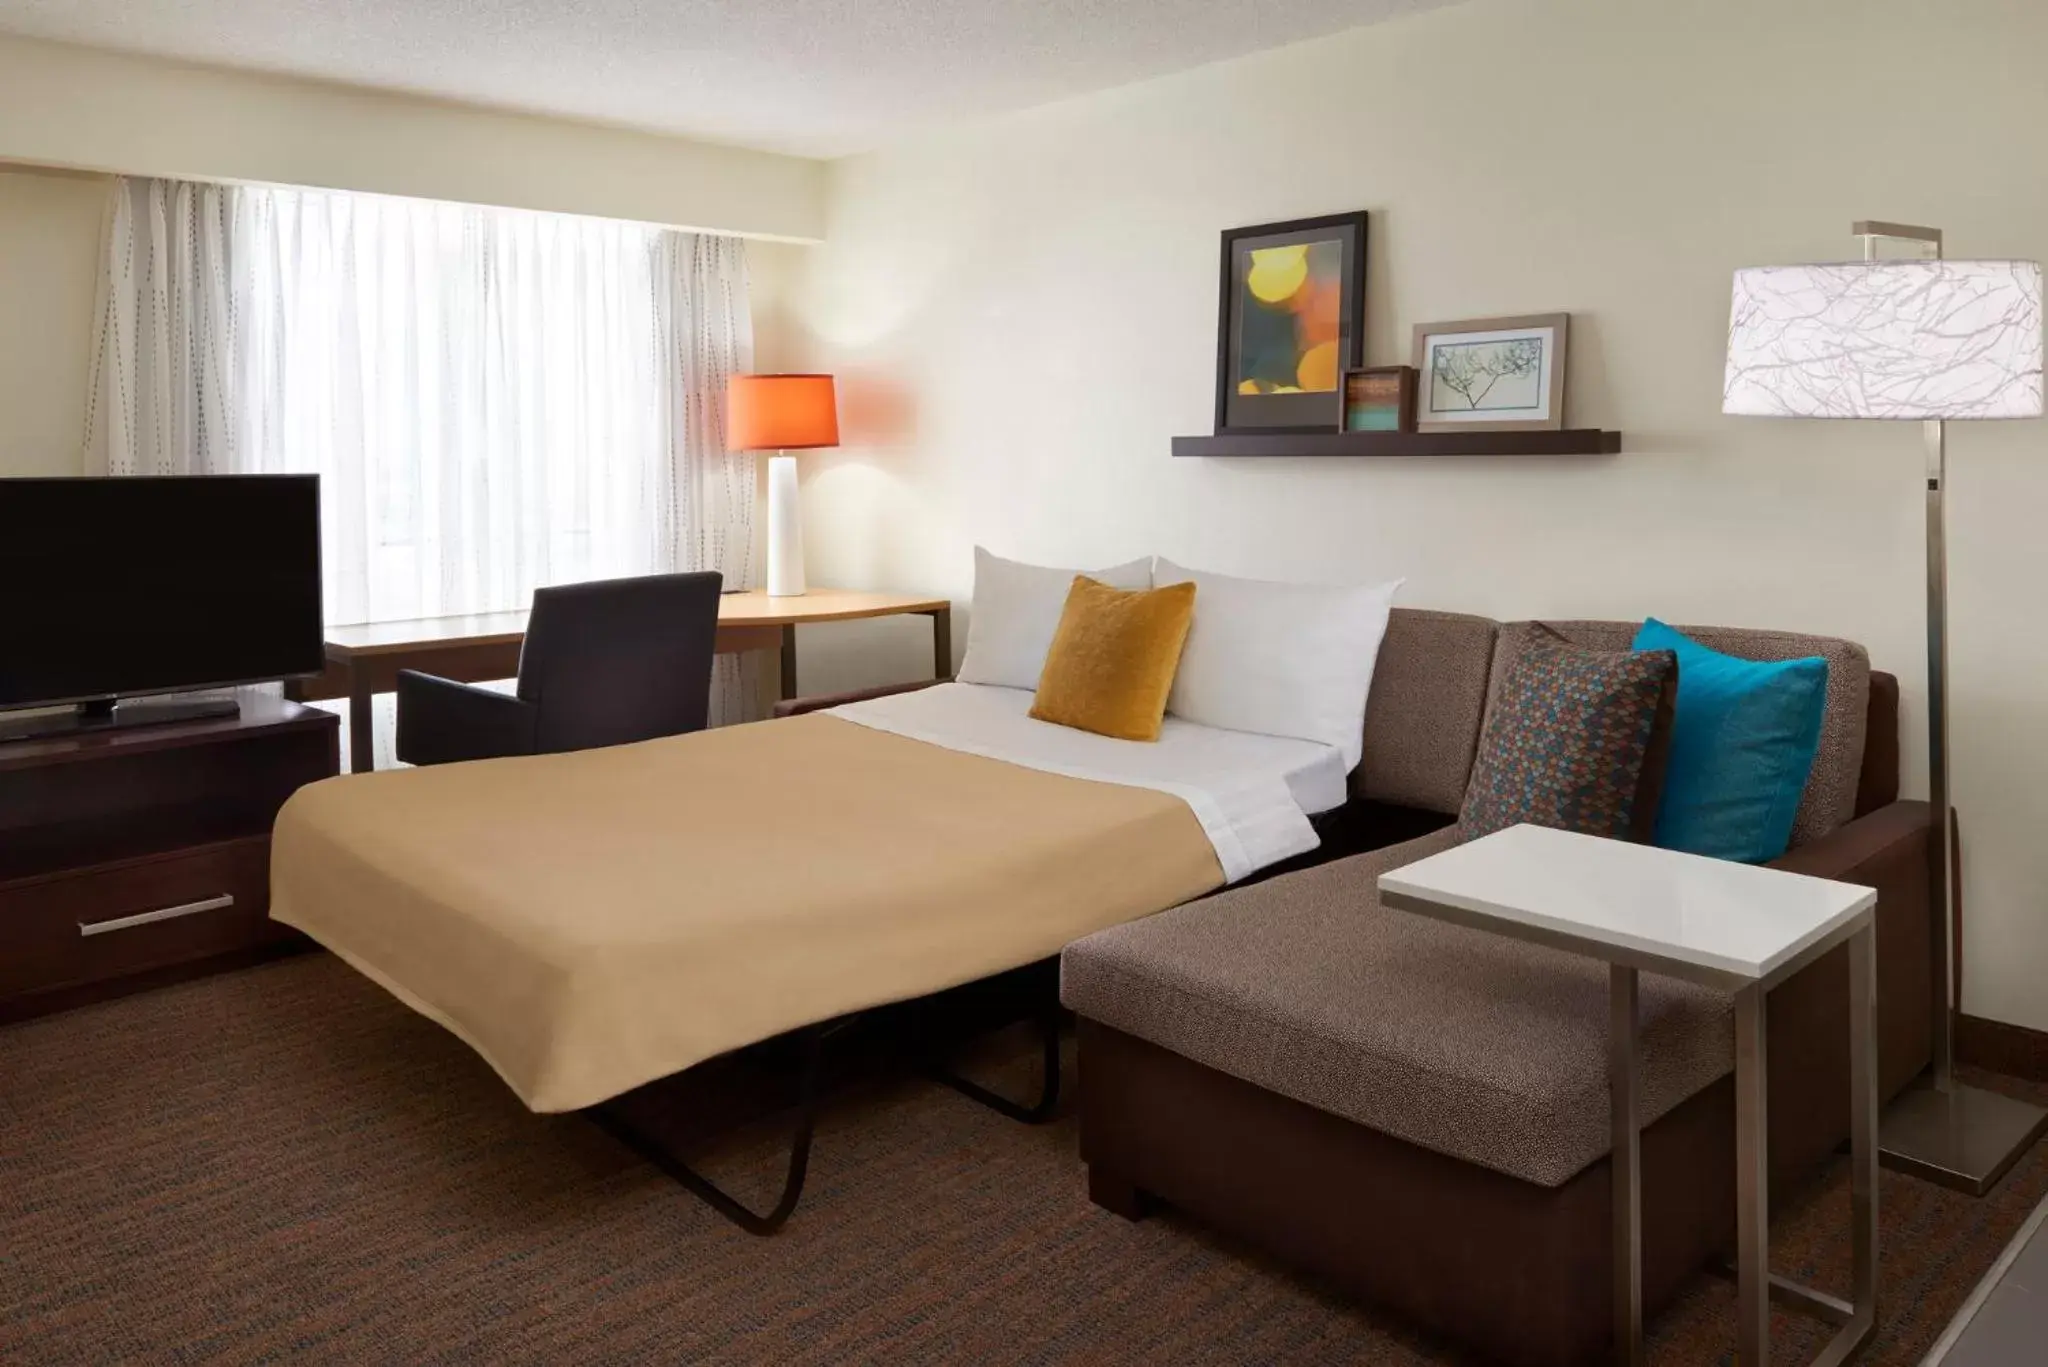 Bedroom, TV/Entertainment Center in Residence Inn by Marriott Toronto Airport